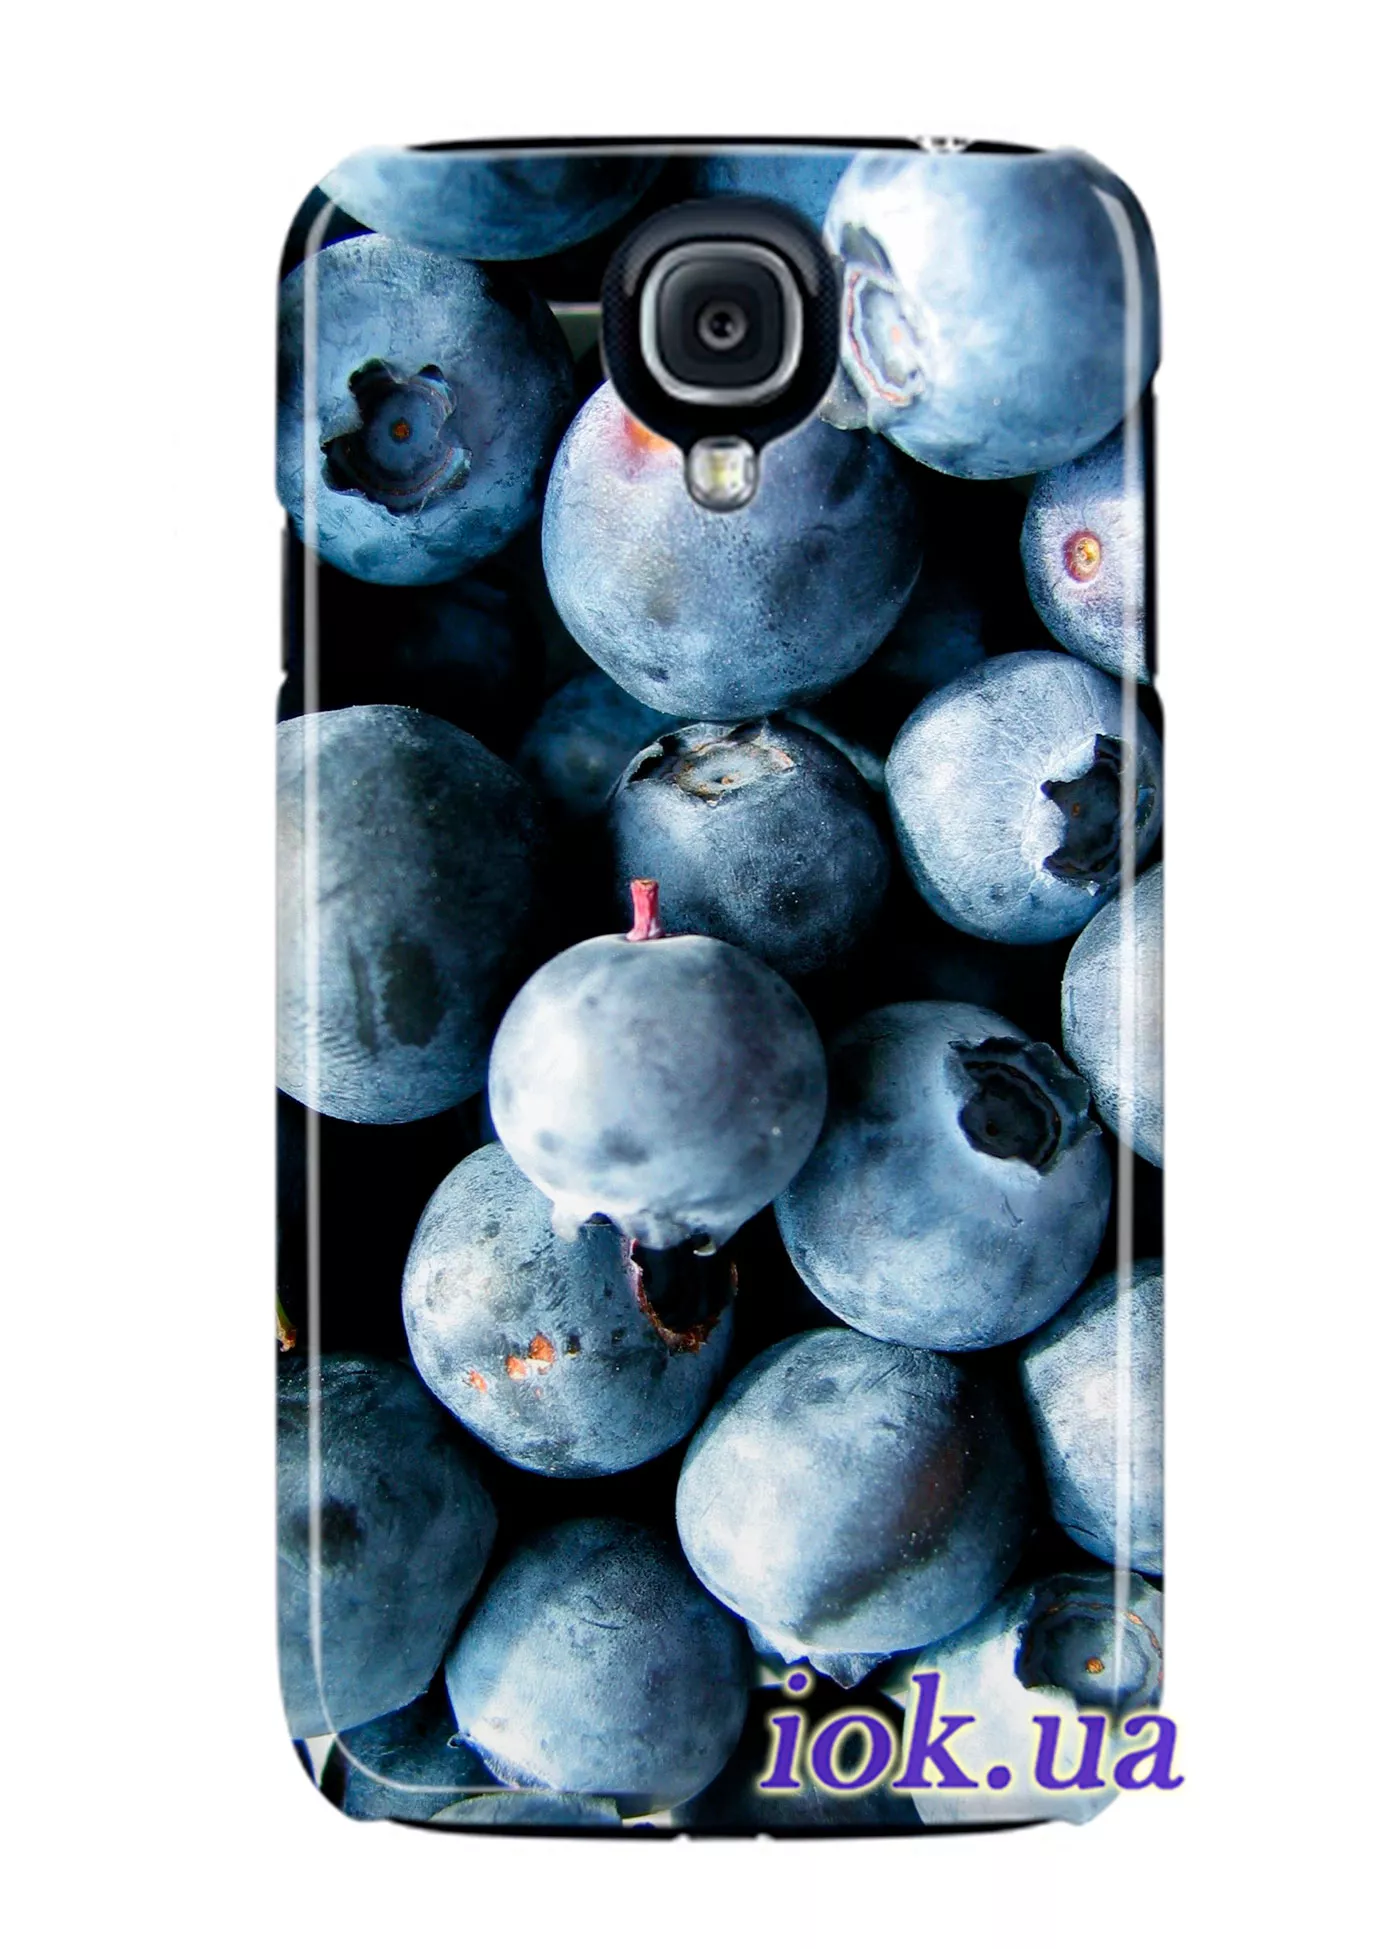 Чехол для Galaxy S4 Black Edition - Черничные ягоды